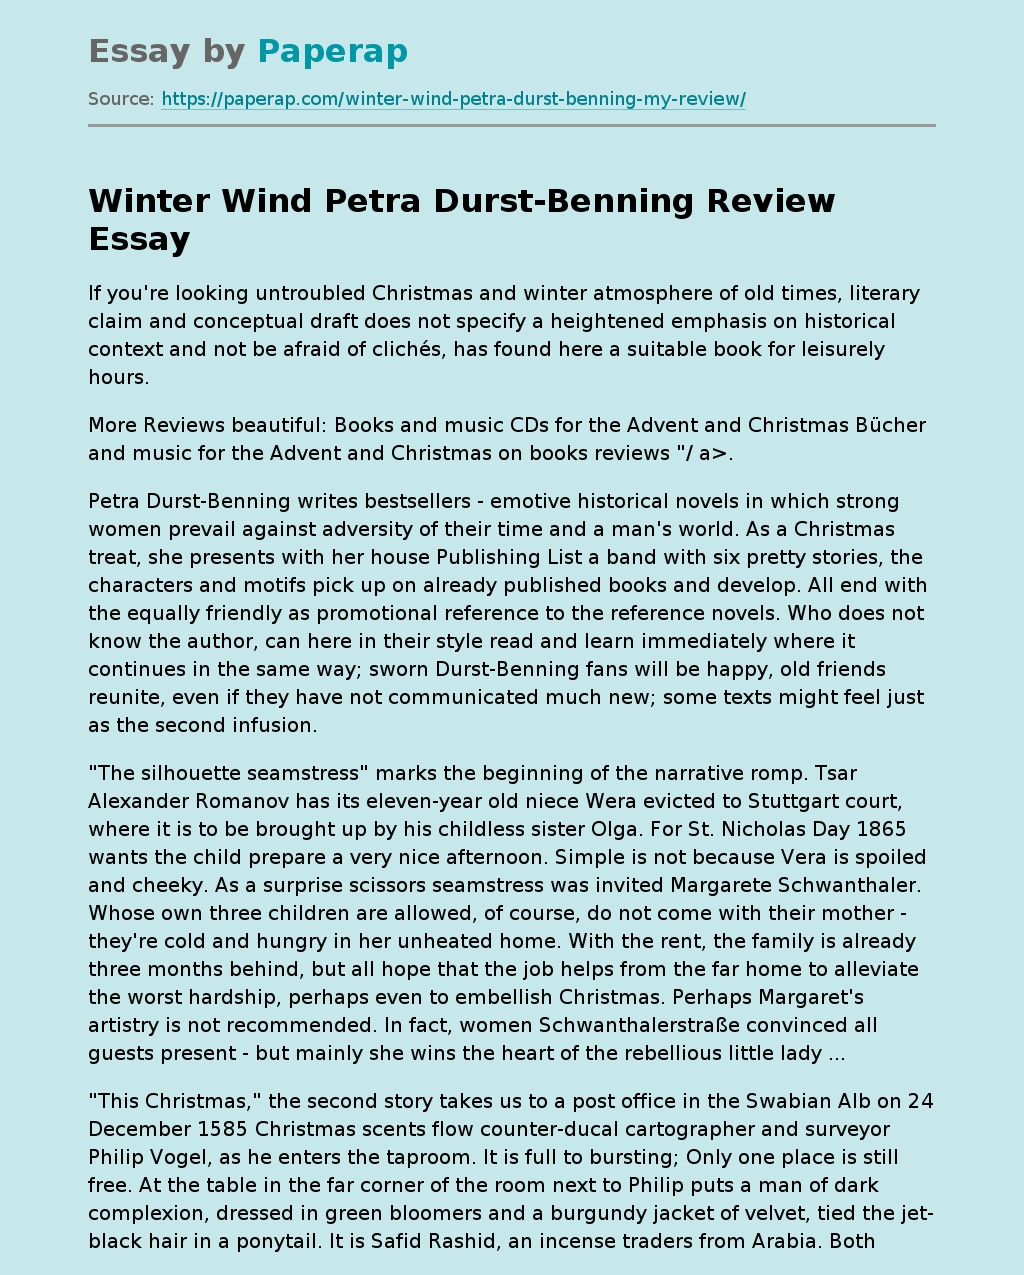 Winter Wind Petra Durst-Benning Review